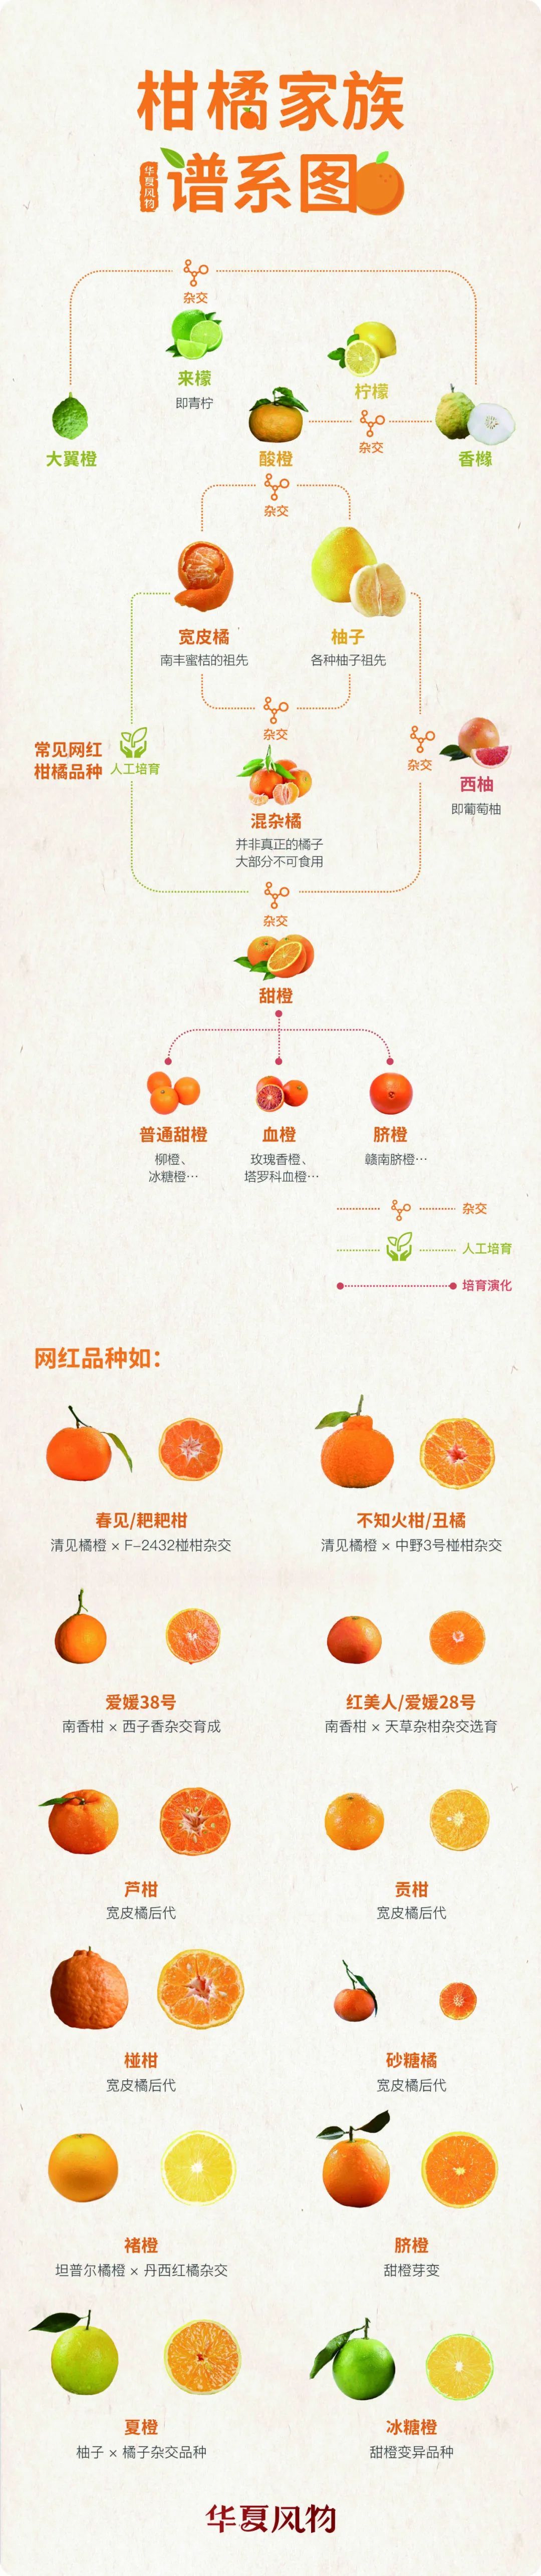 柑橘家族谱系草图 ©华夏风物